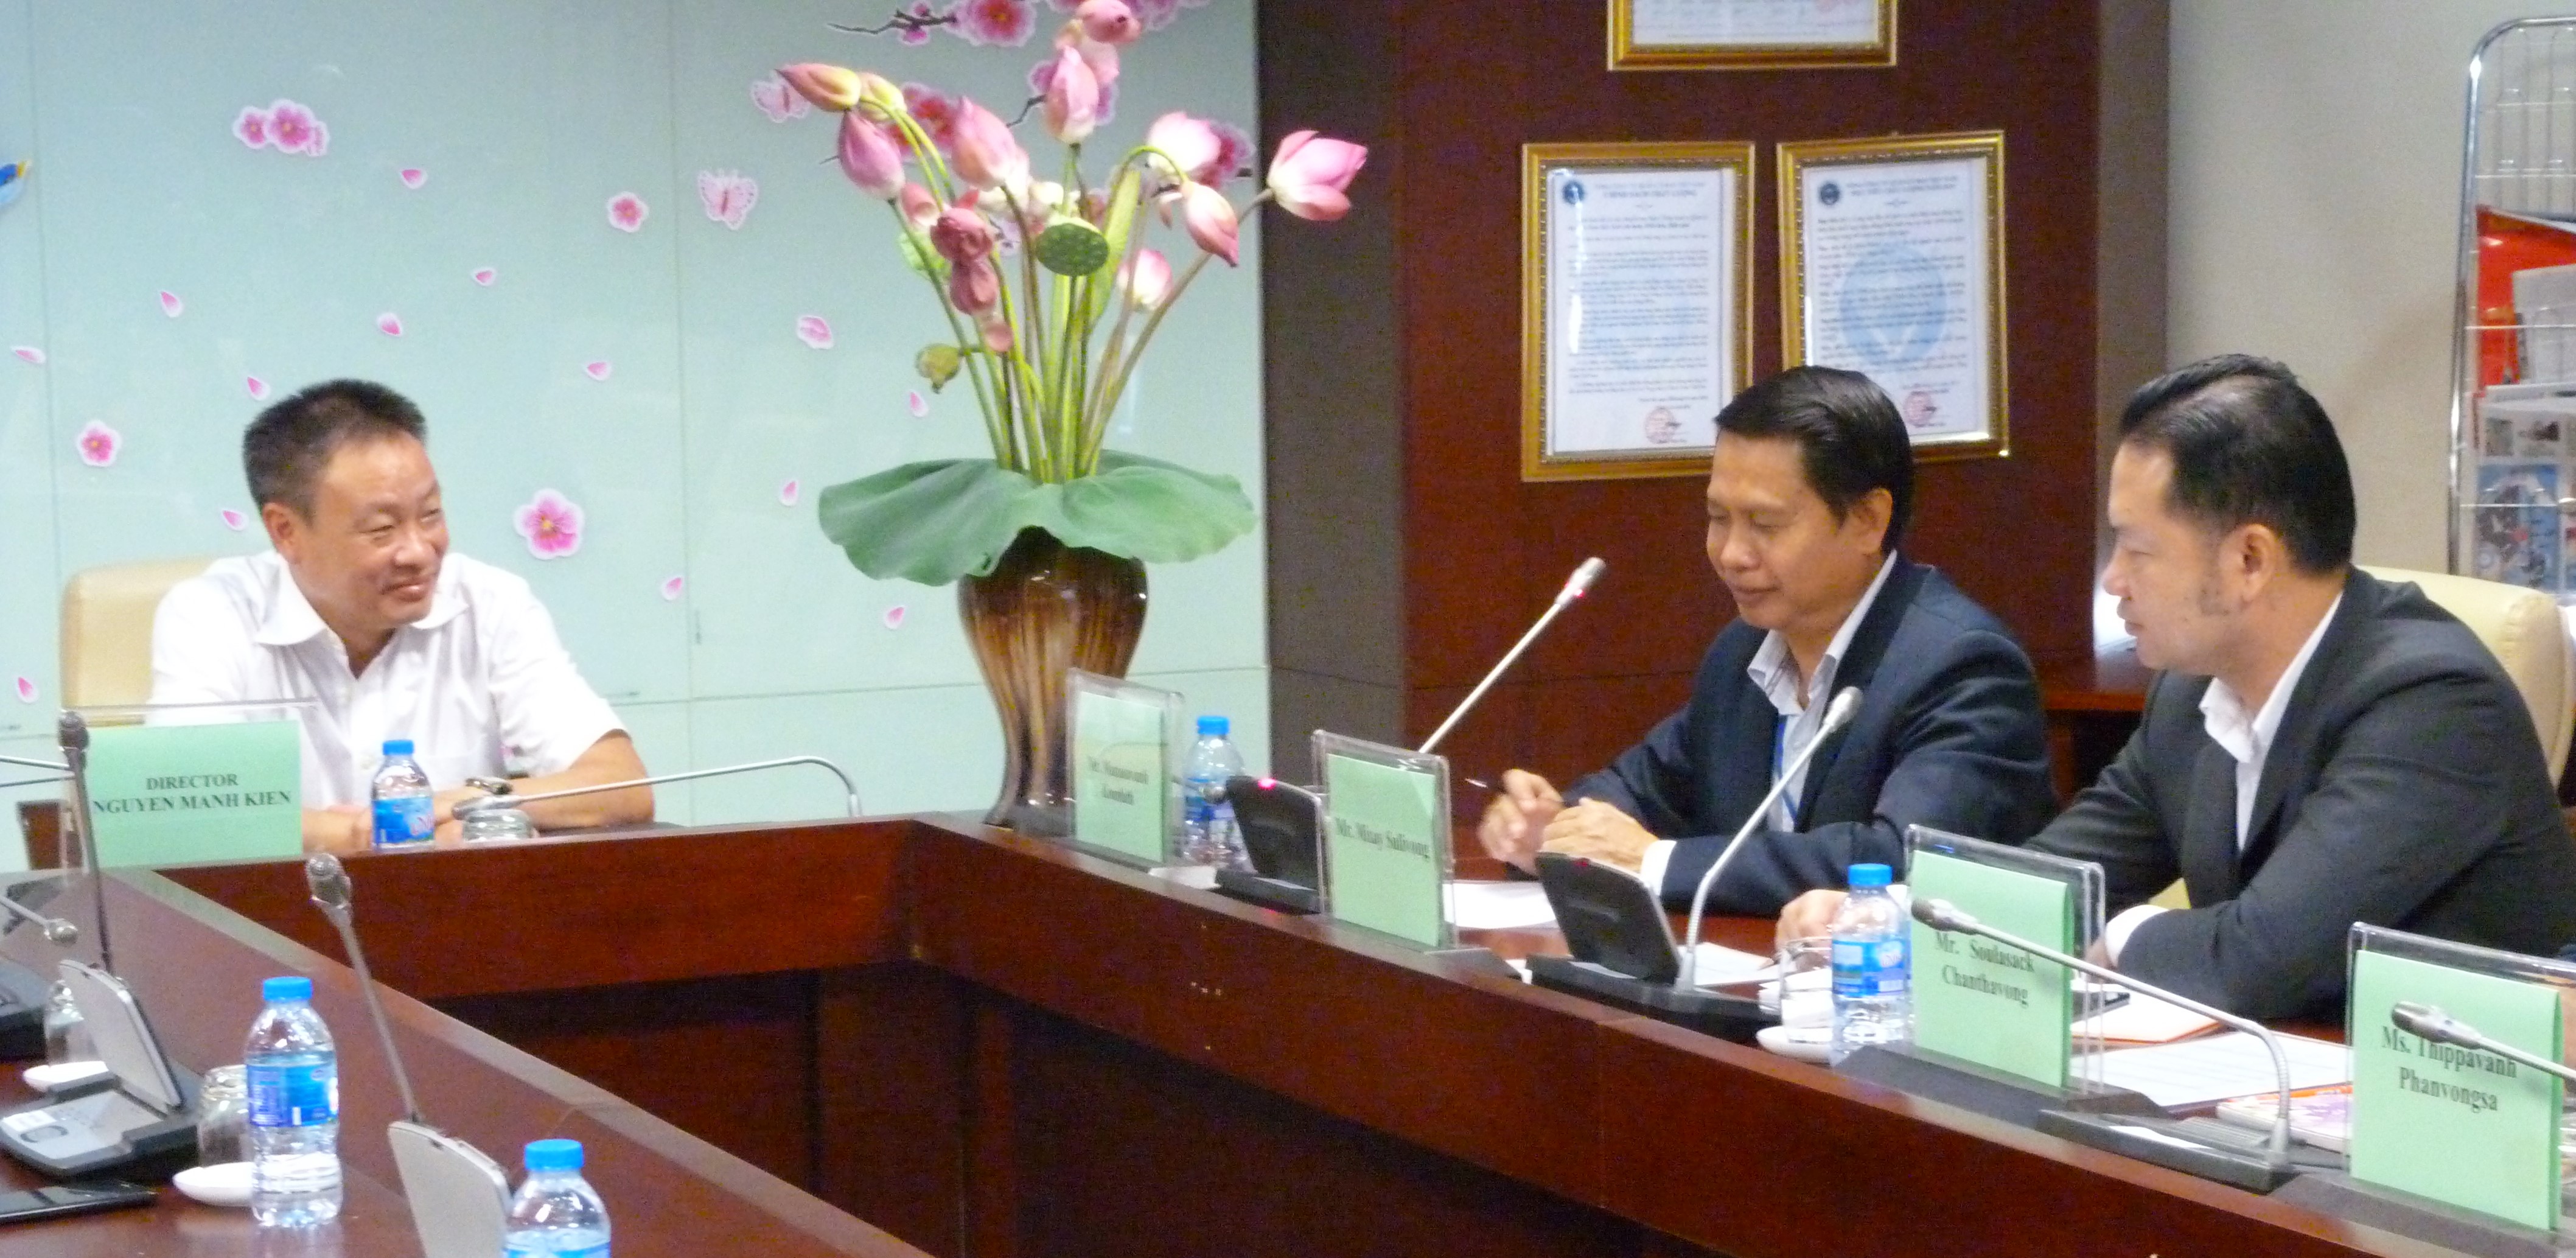 Hội nghị hợp tác về Thông báo tin tức hàng không giữa  Tổng công ty Quản lý bay Việt Nam và Cơ quan quản lý bay Lào